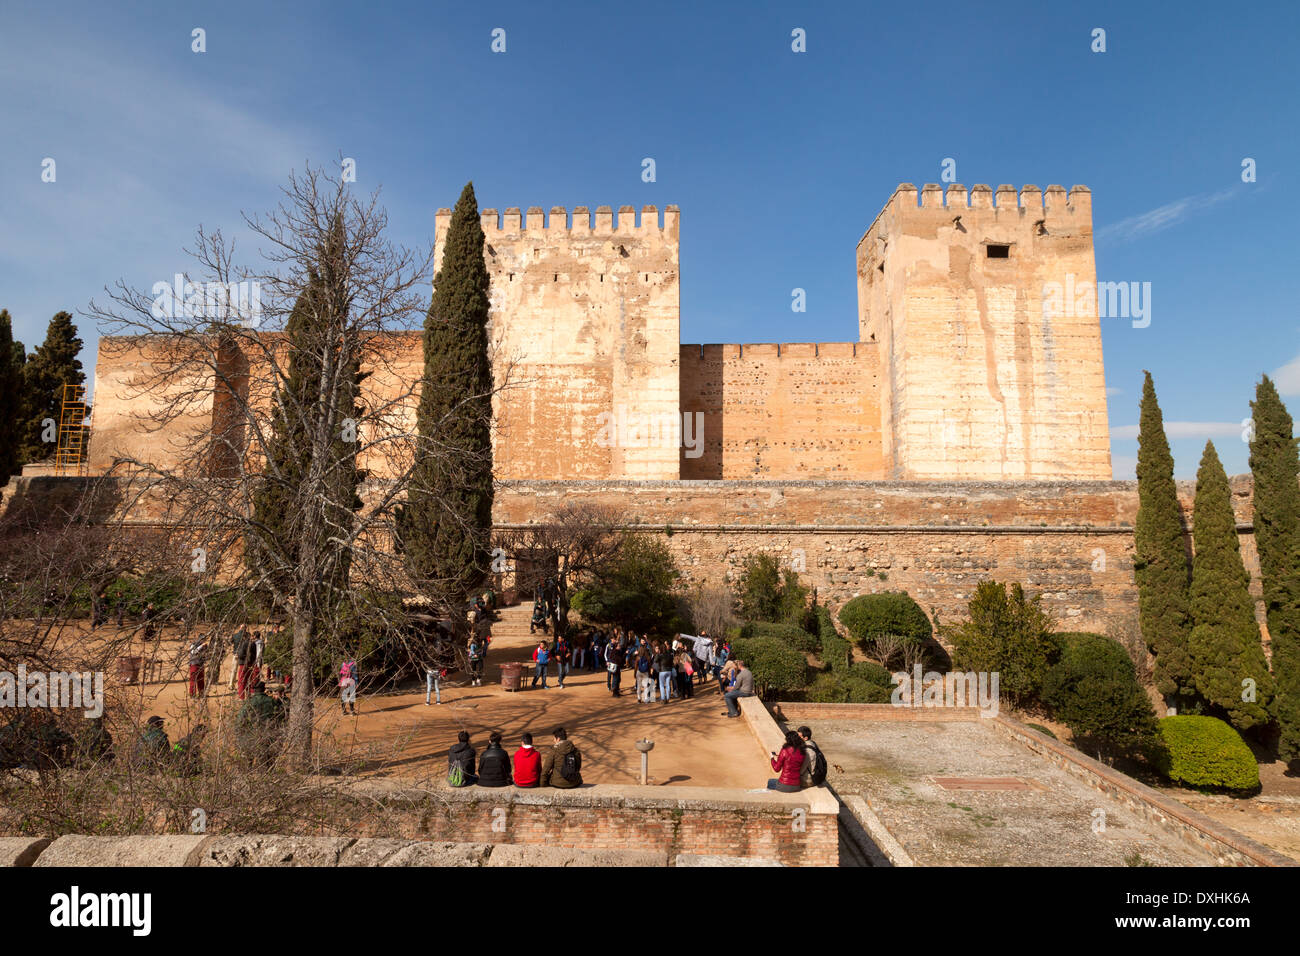 L'Alcazaba, Palais de l'Alhambra, Grenade, Andalousie, Espagne, Europe Banque D'Images